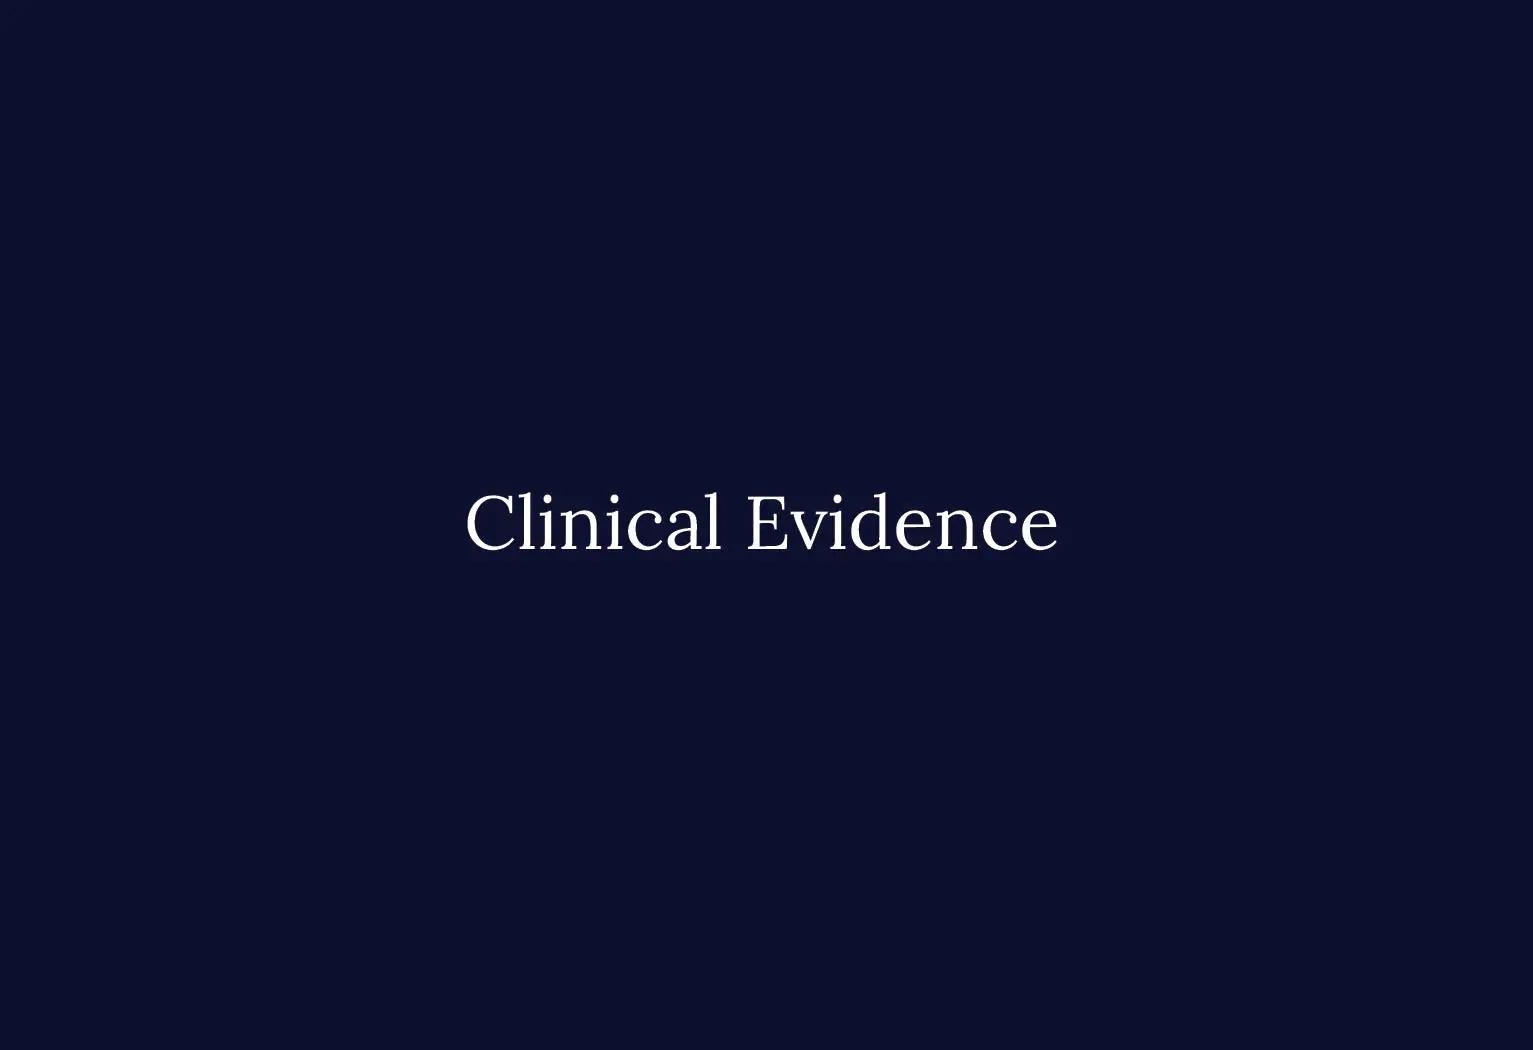 Clinical Evidence